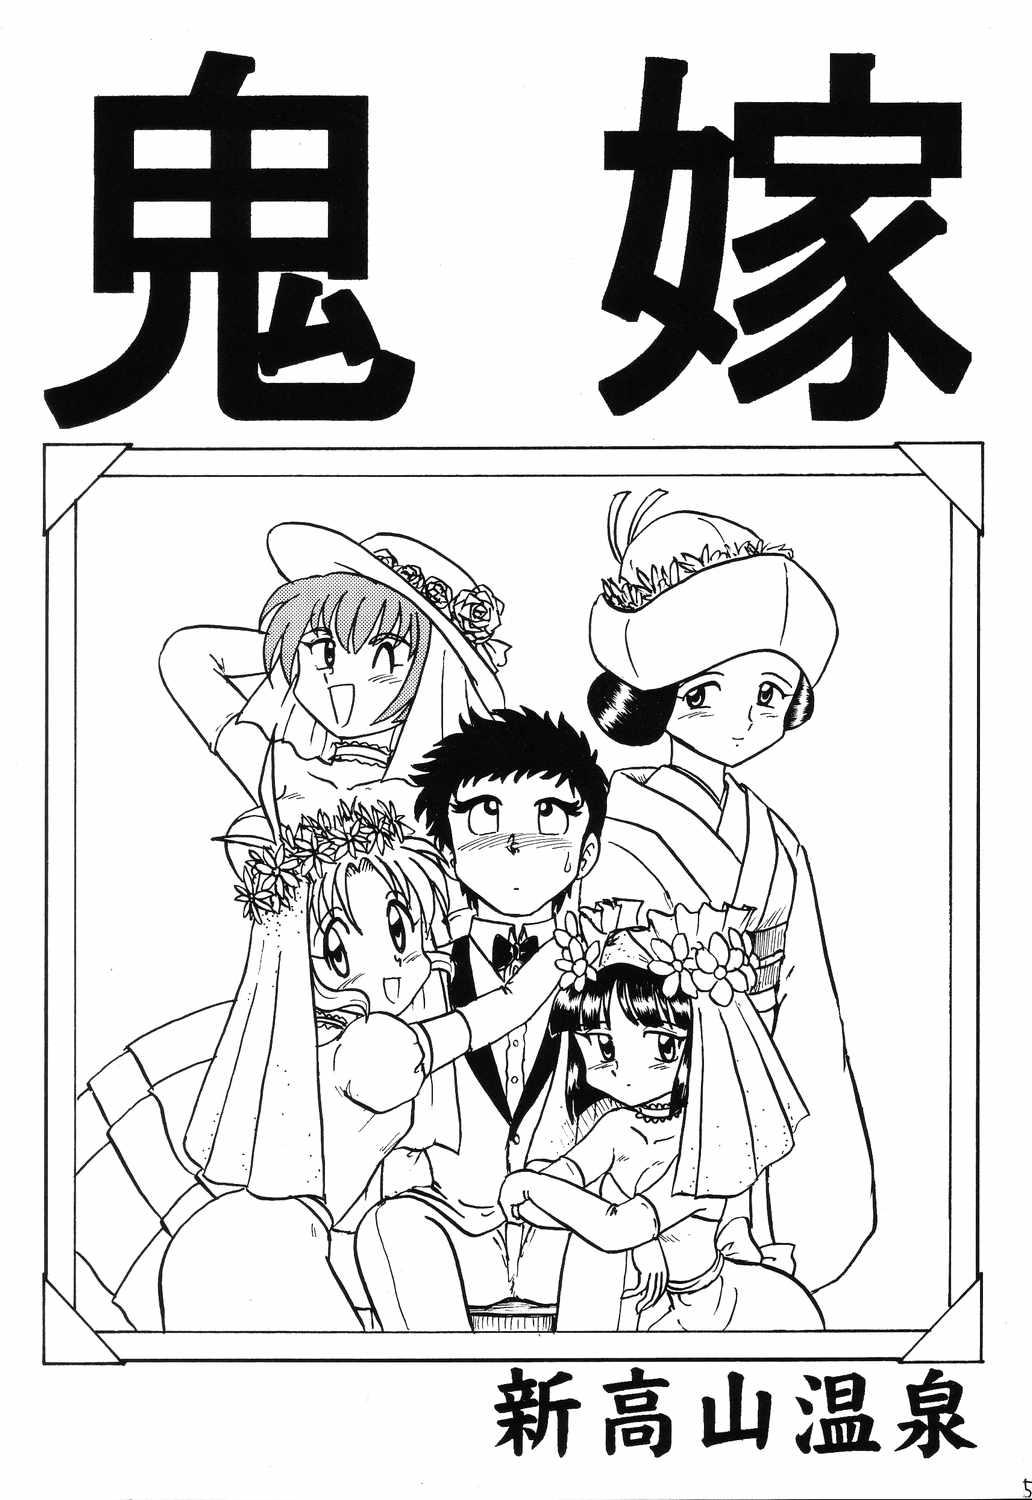 Friends Happa Tai 2 Revised Edition - To heart Kizuato Magical antique Hardcore - Page 4